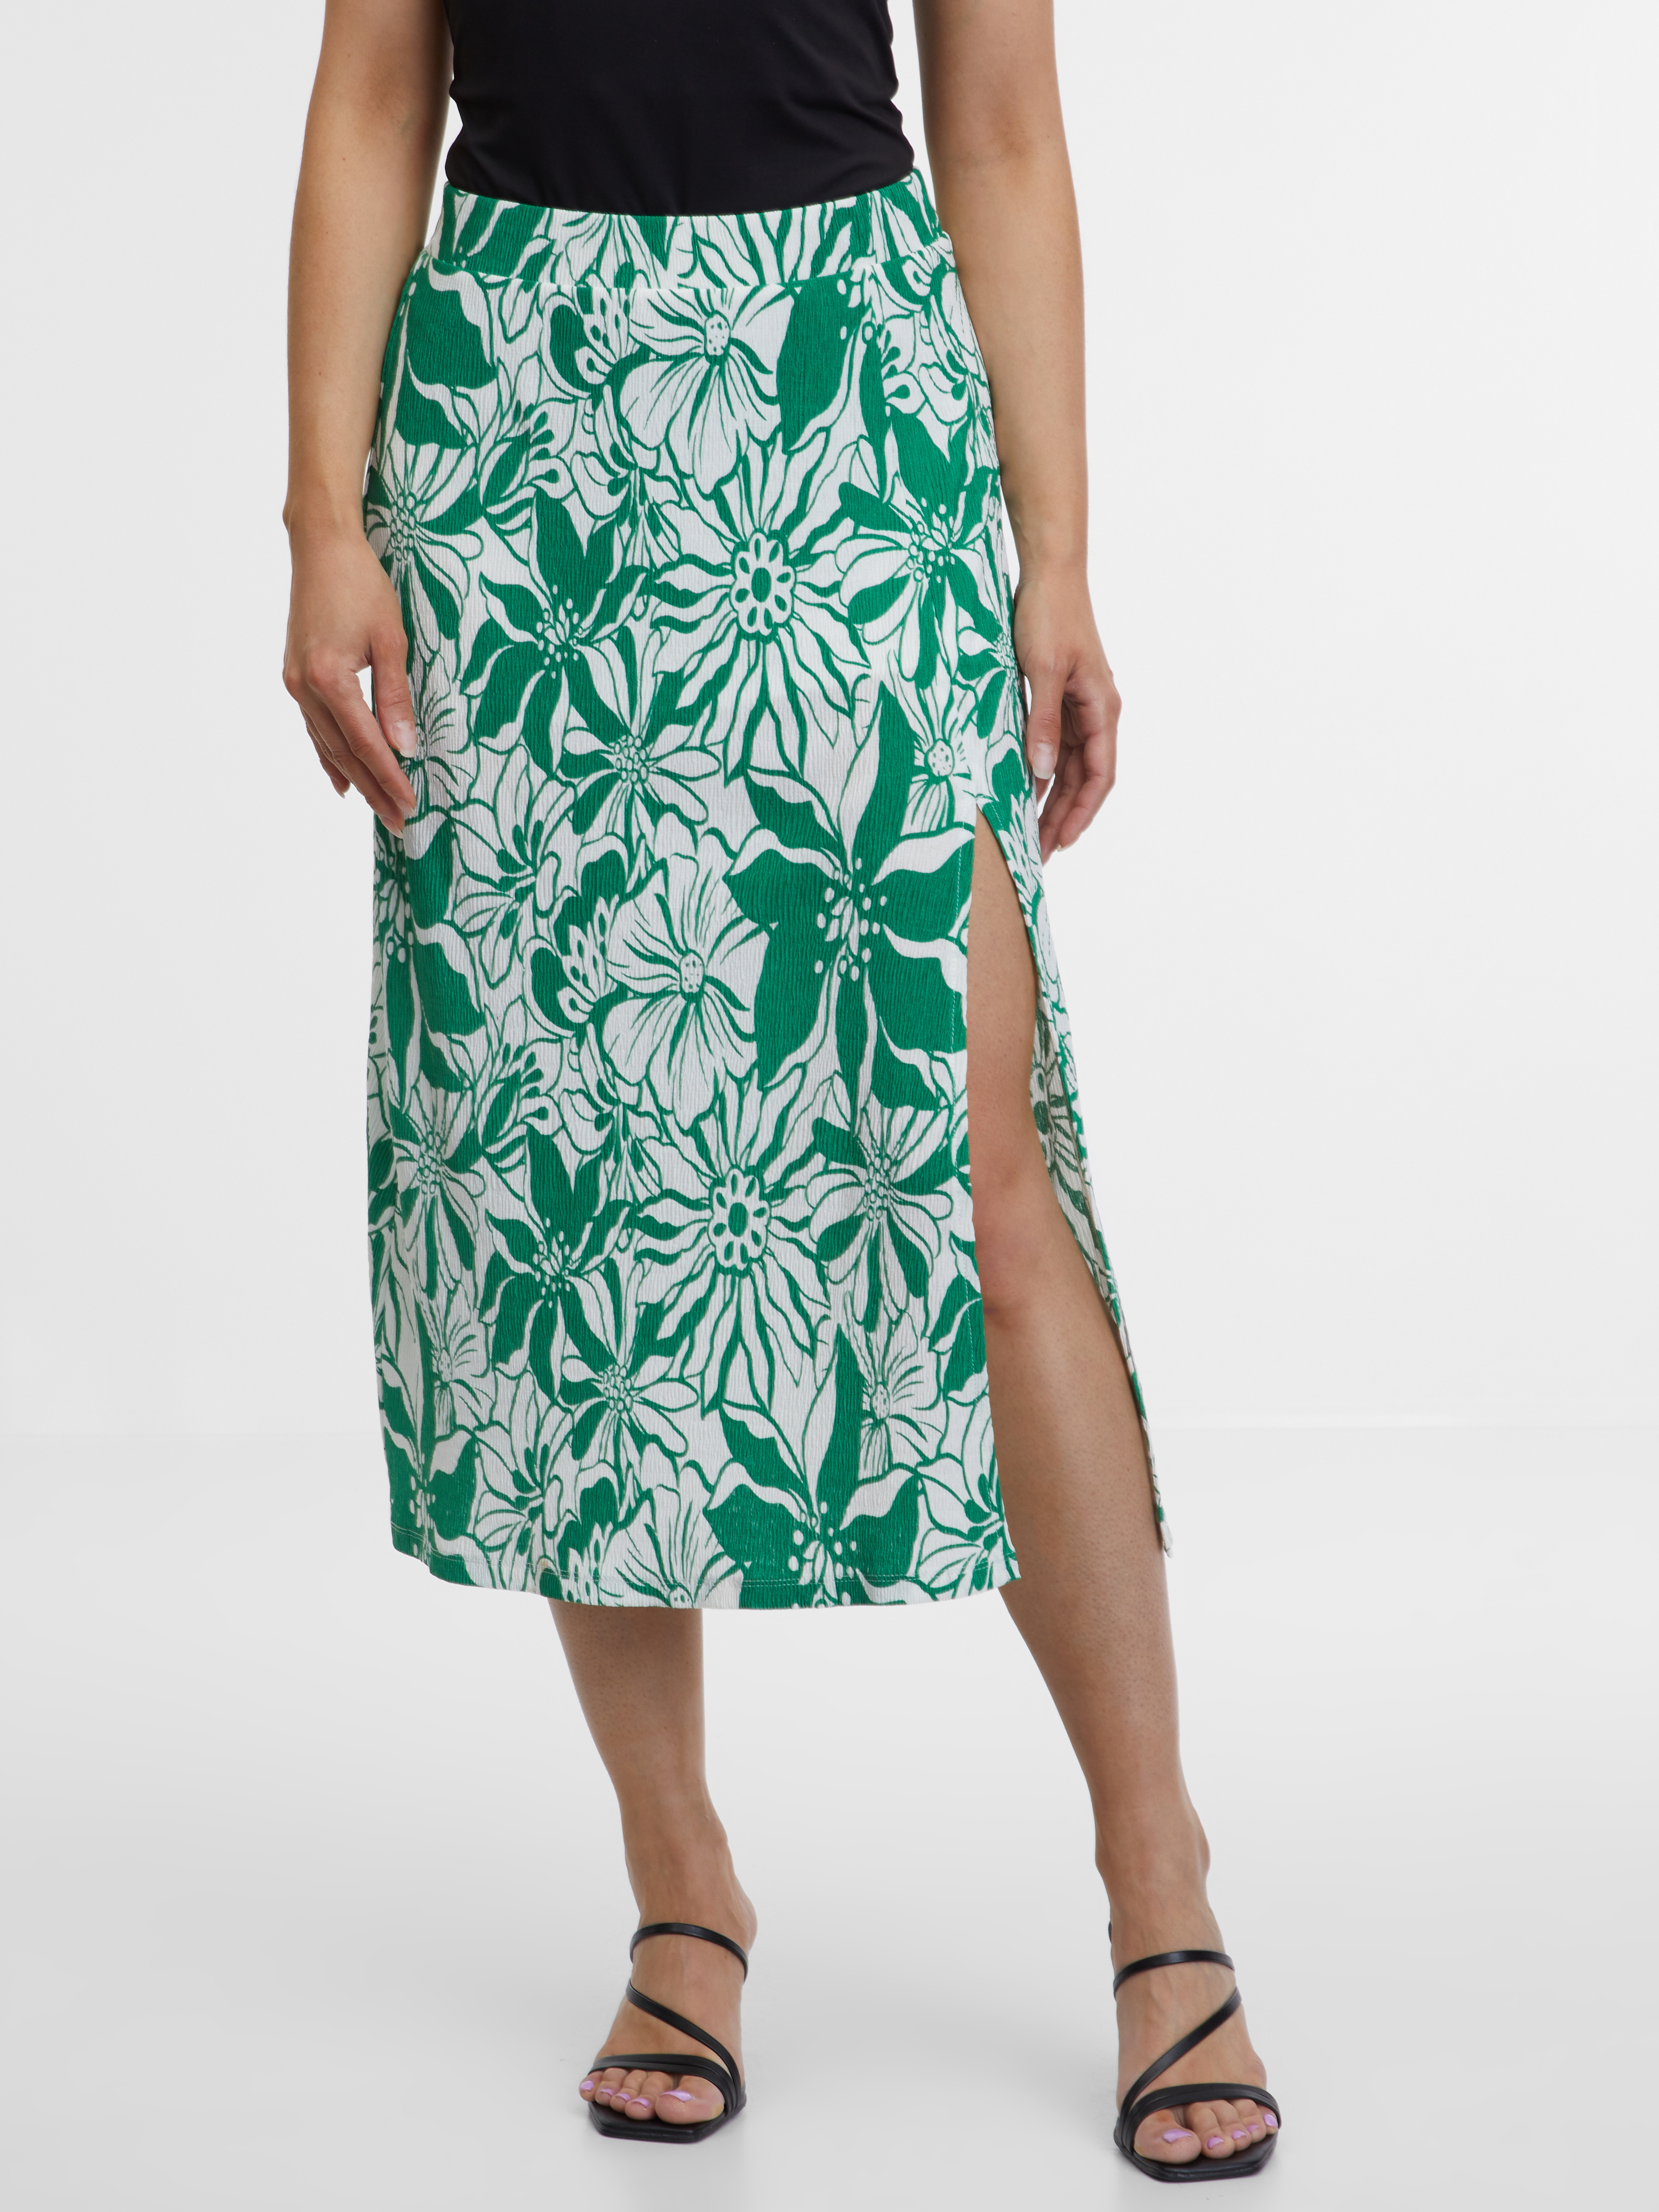 Orsay Green Women's Patterned Skirt - Women's